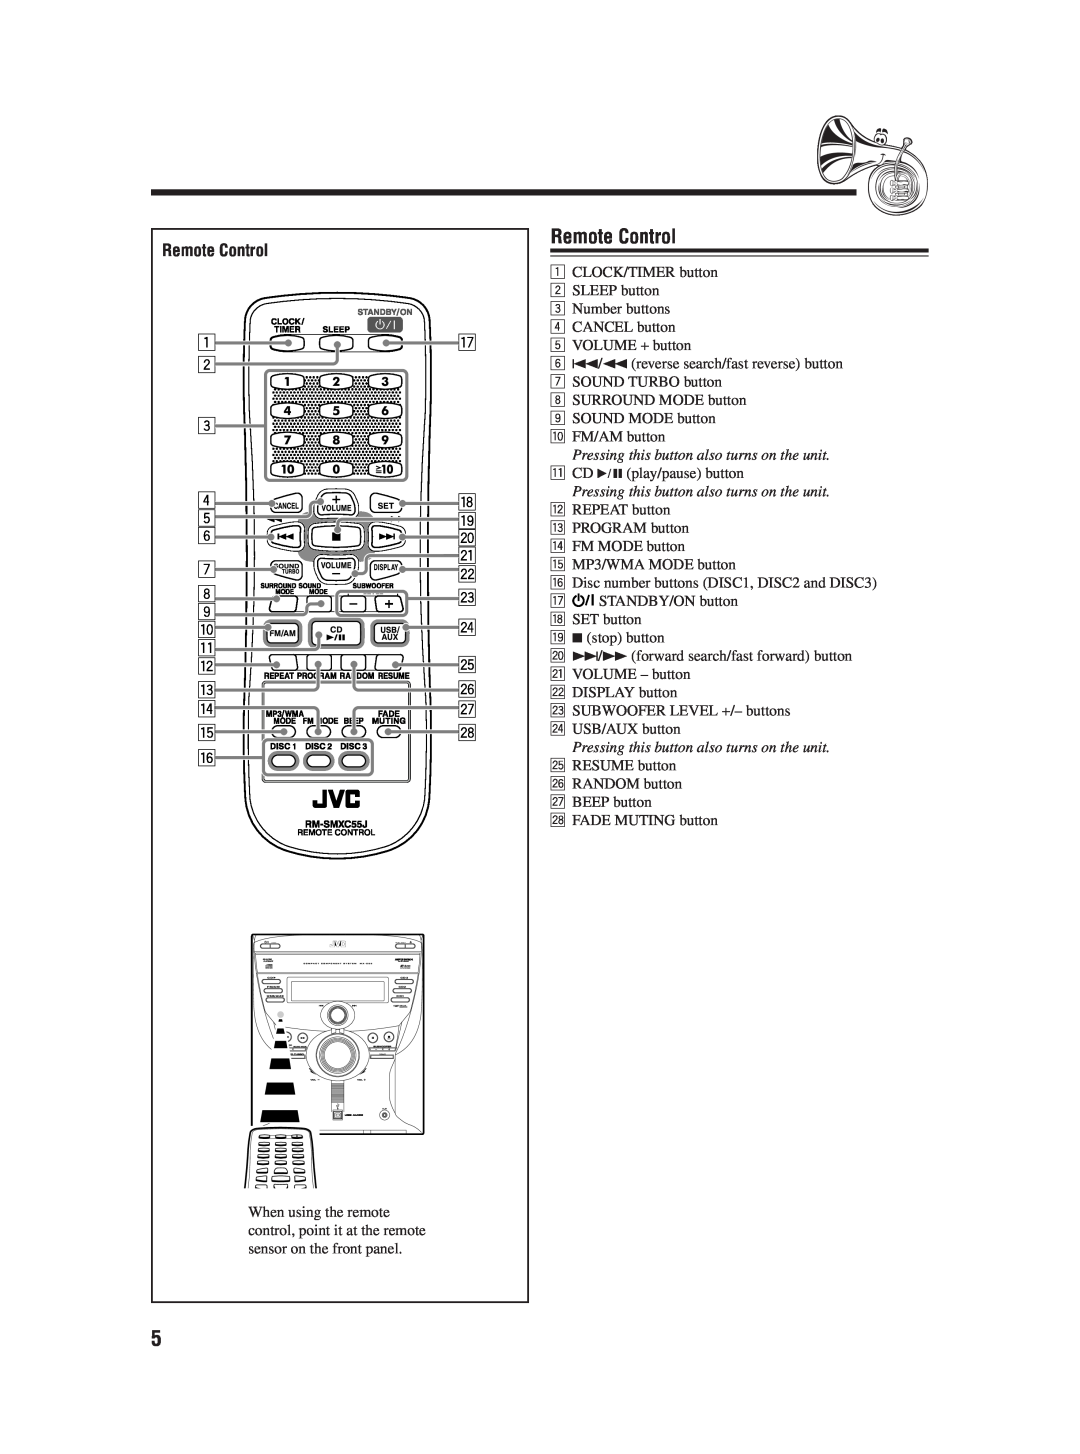 JVC 0406KMMBICSAM, LVT1541-004A, SP-MXC55 manual Remote Control 